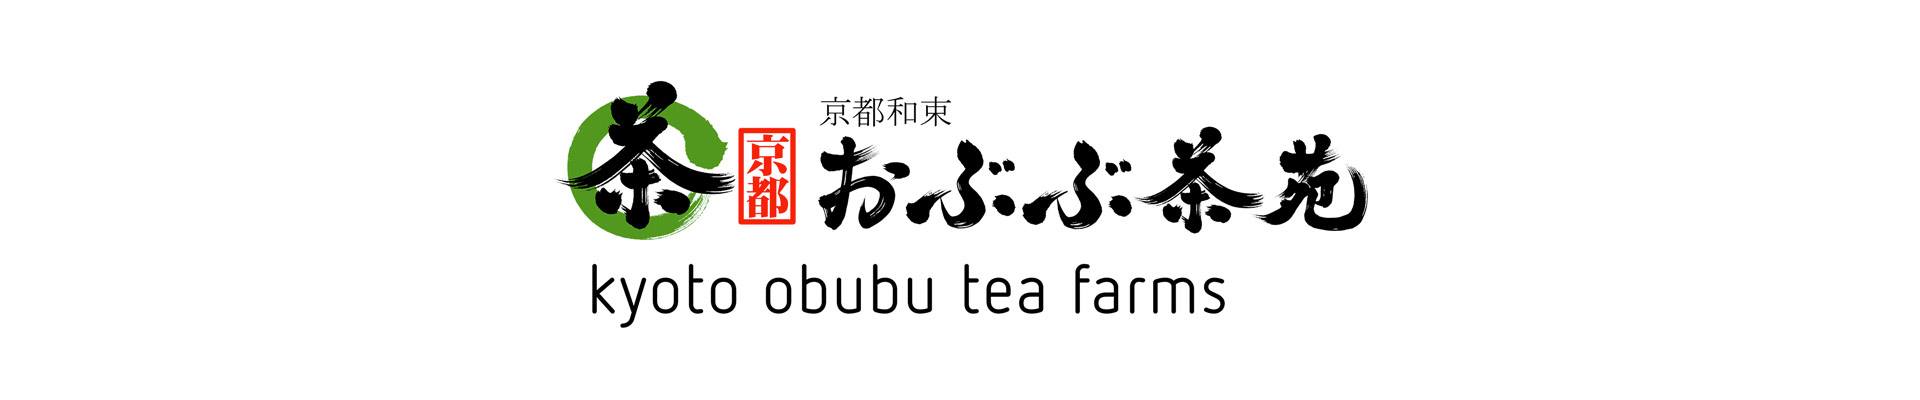 Kyoto Obubu Tea Farm